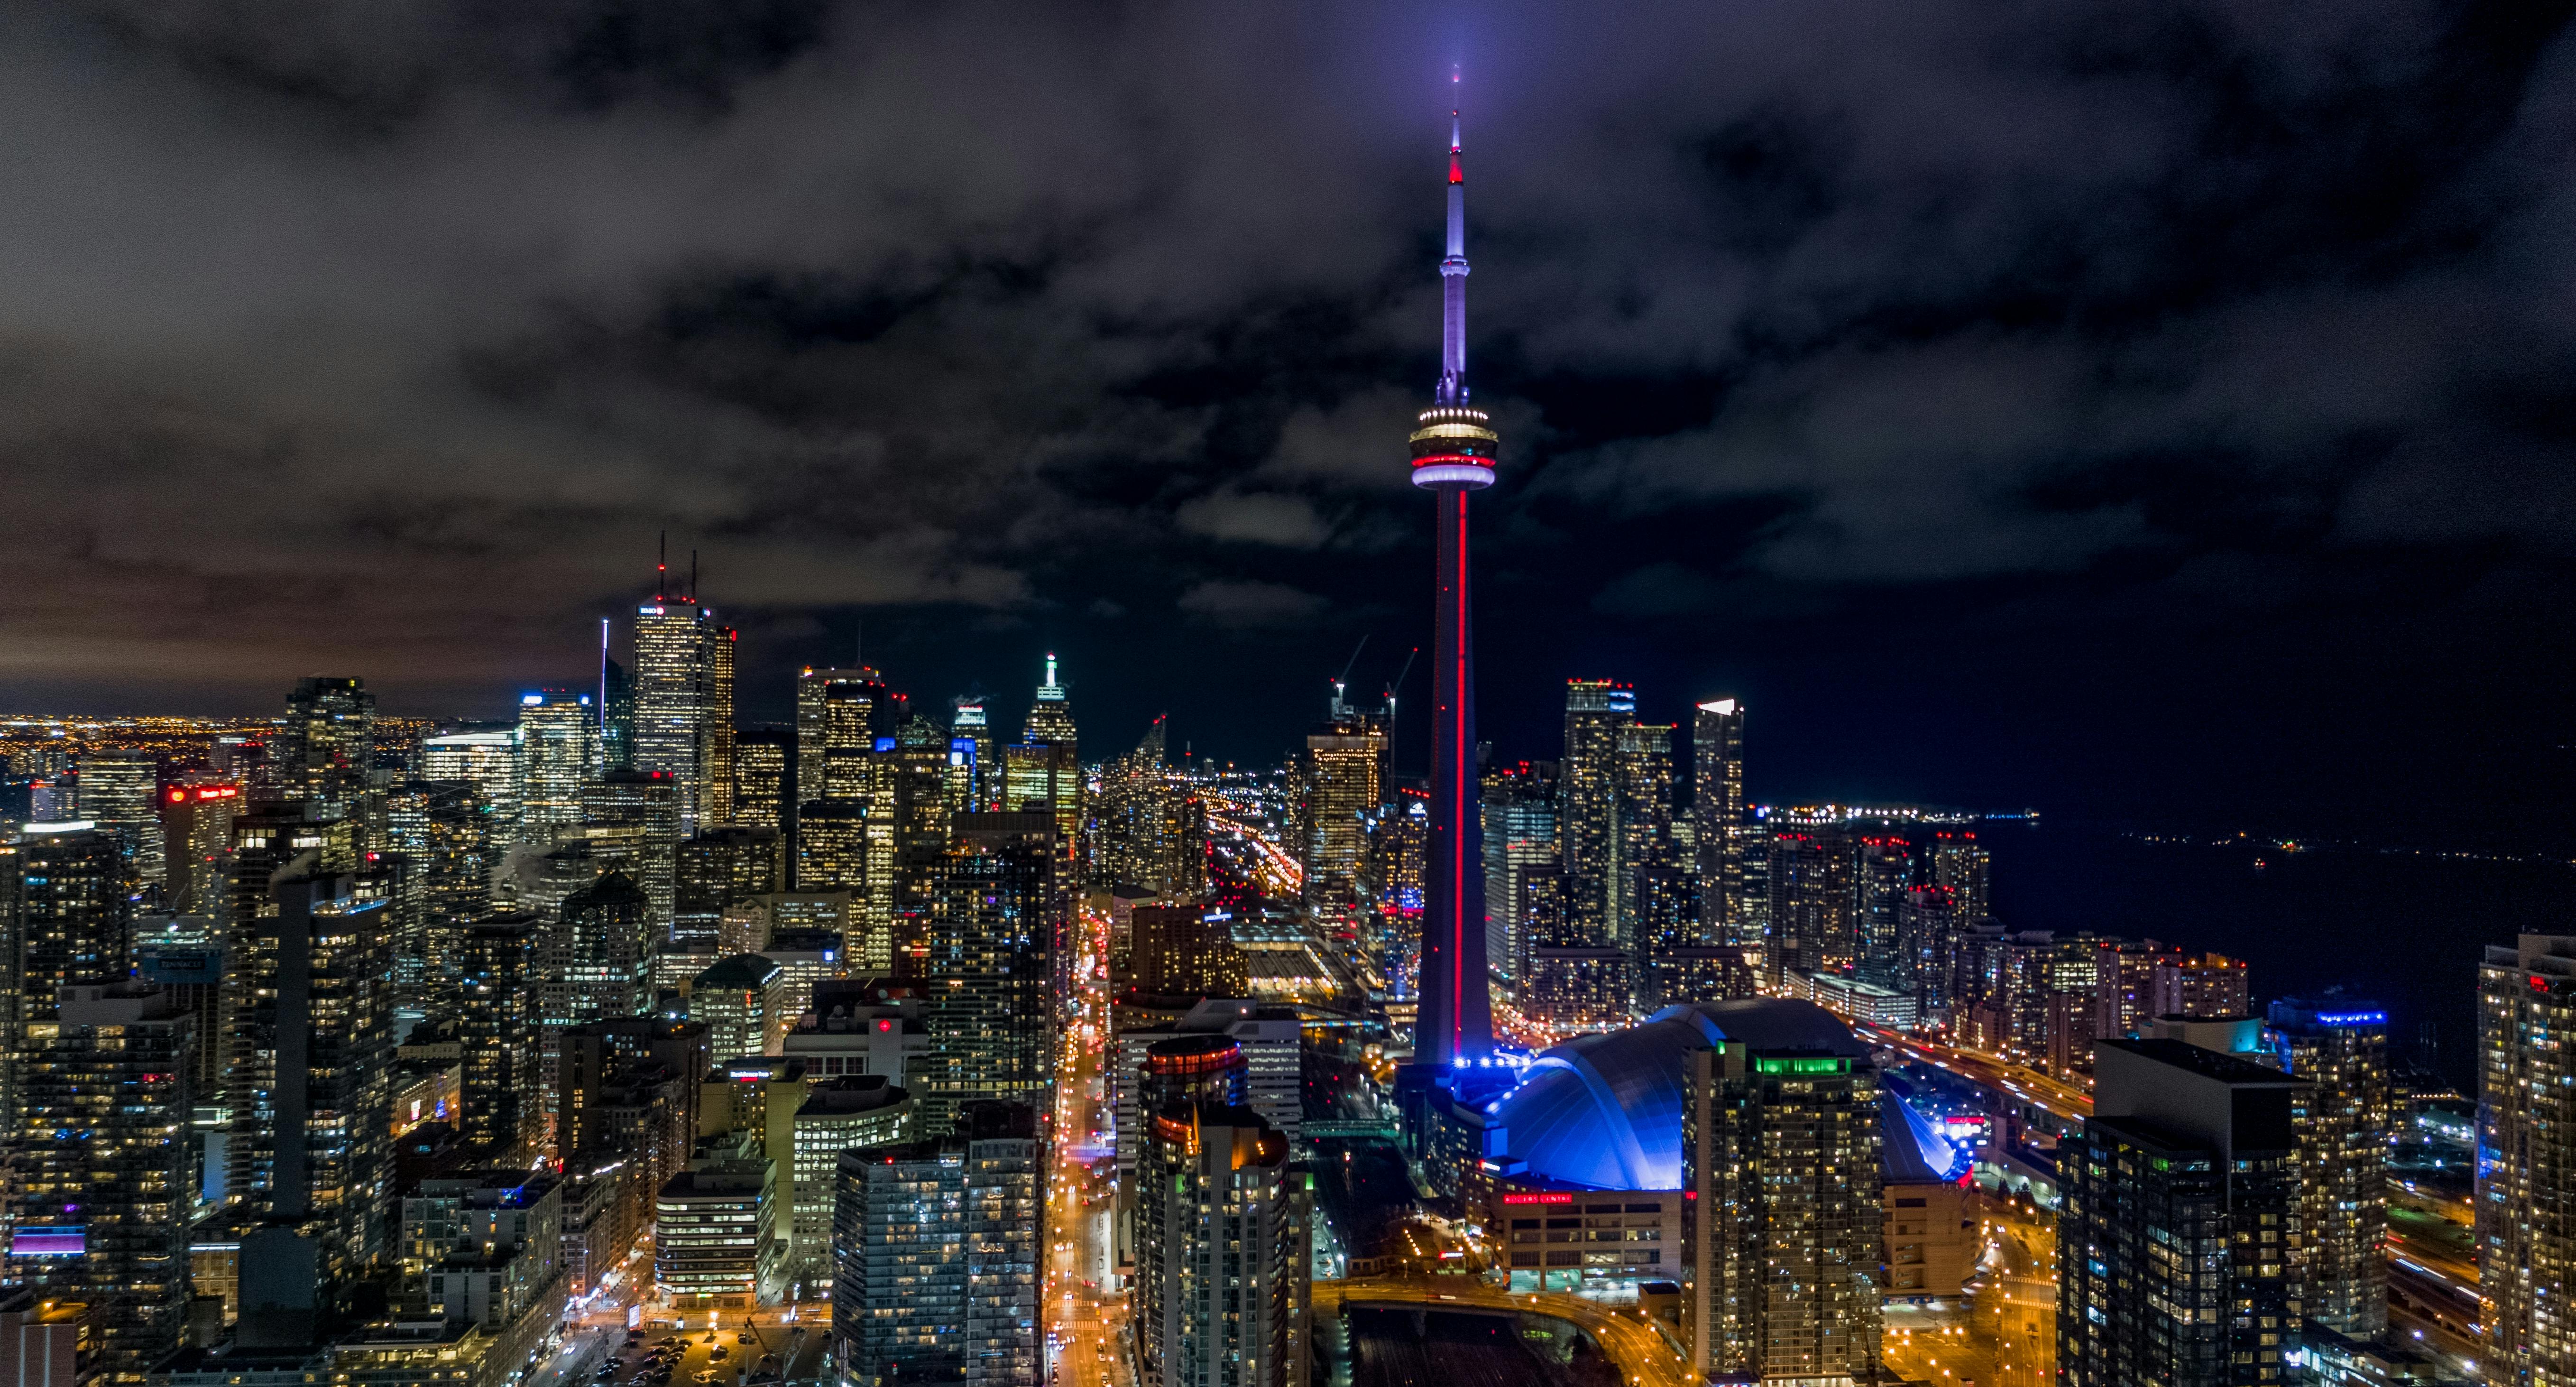 Nachttour durch Toronto mit Hafenrundfahrt